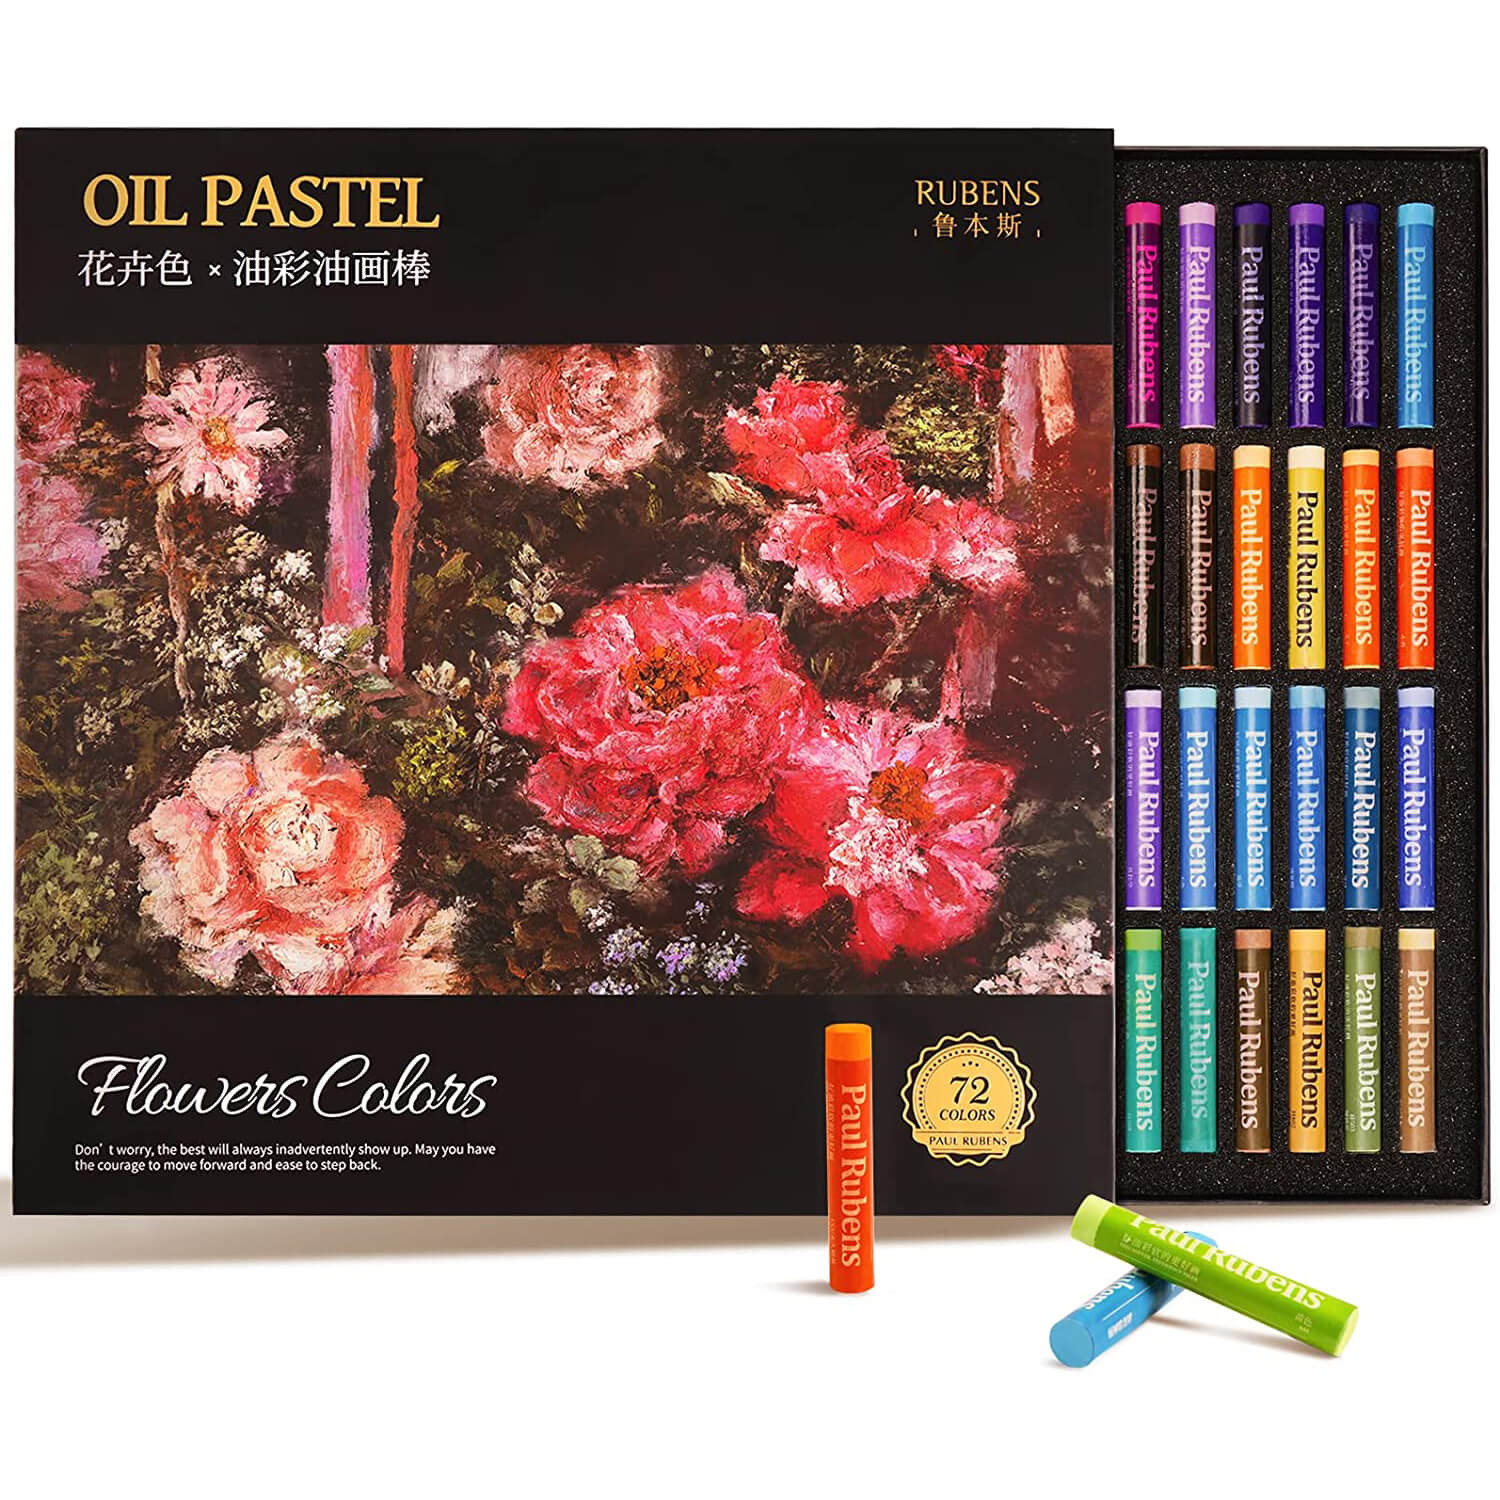 Paul Rubens 72 Floral Colors Artist Oil Pastel Set